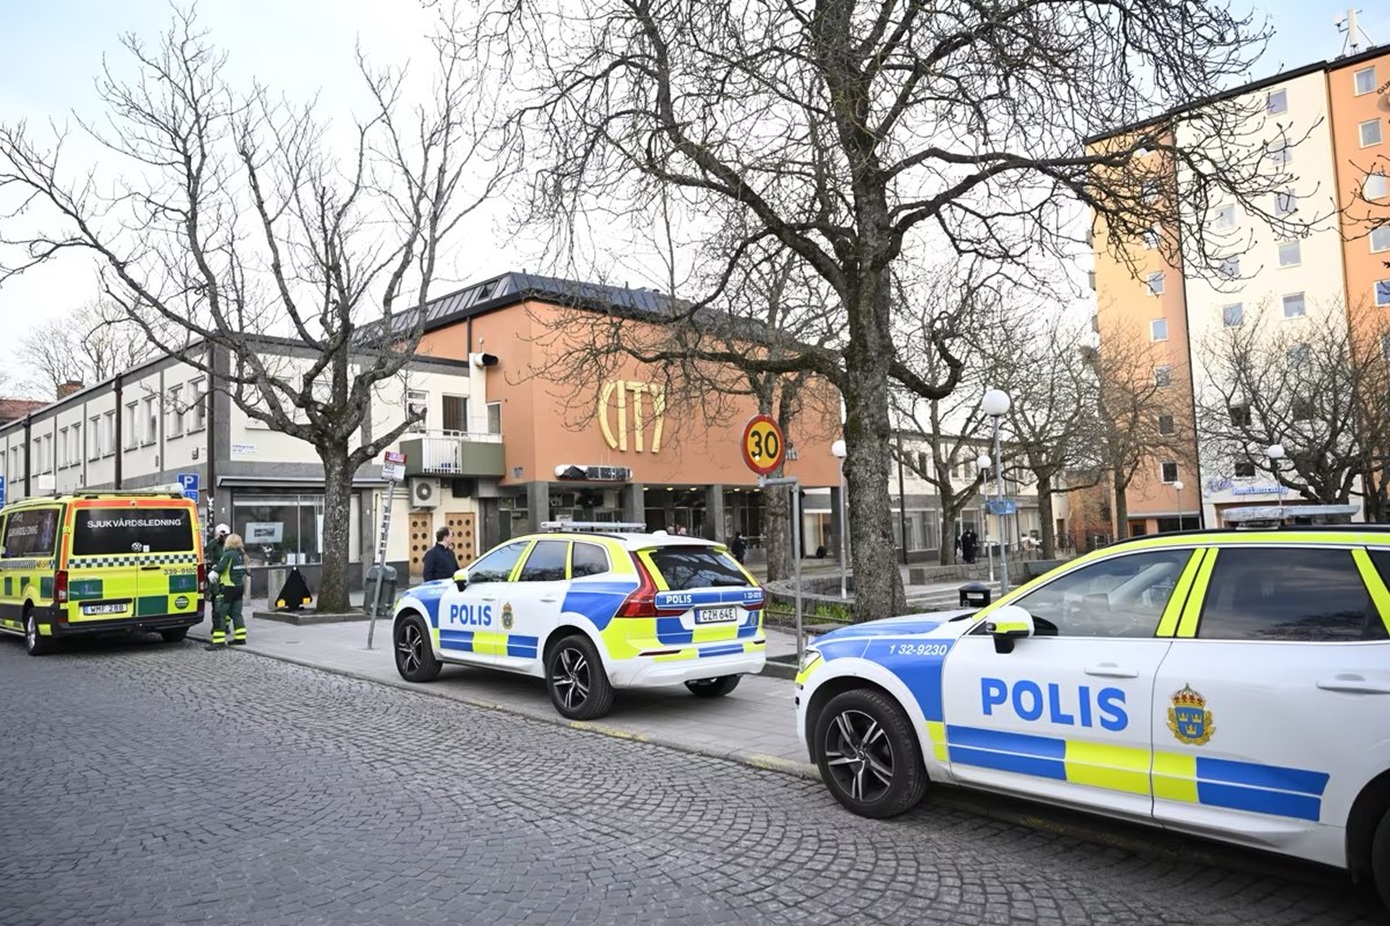 Κουκουλοφόροι έριξαν καπνογόνα σε αντιφασιστική εκδήλωση στη Σουηδία – Τρεις άνθρωποι στο νοσοκομείο